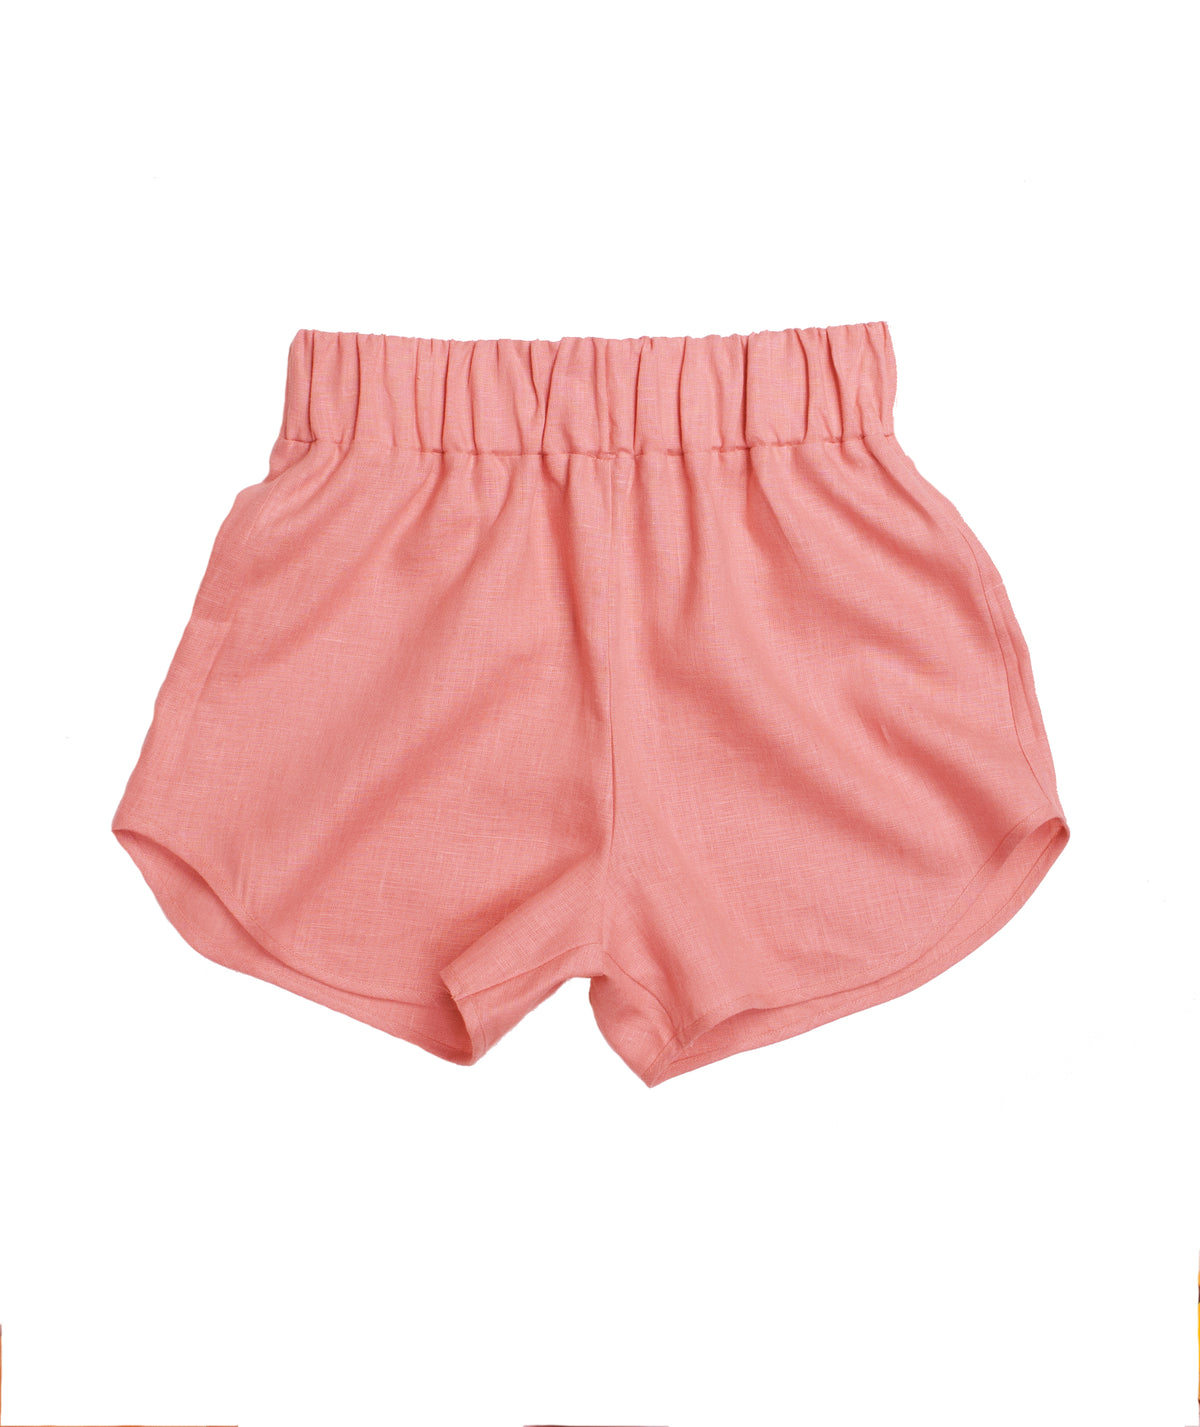 Linen Puchi Shorts - Choose Your Color